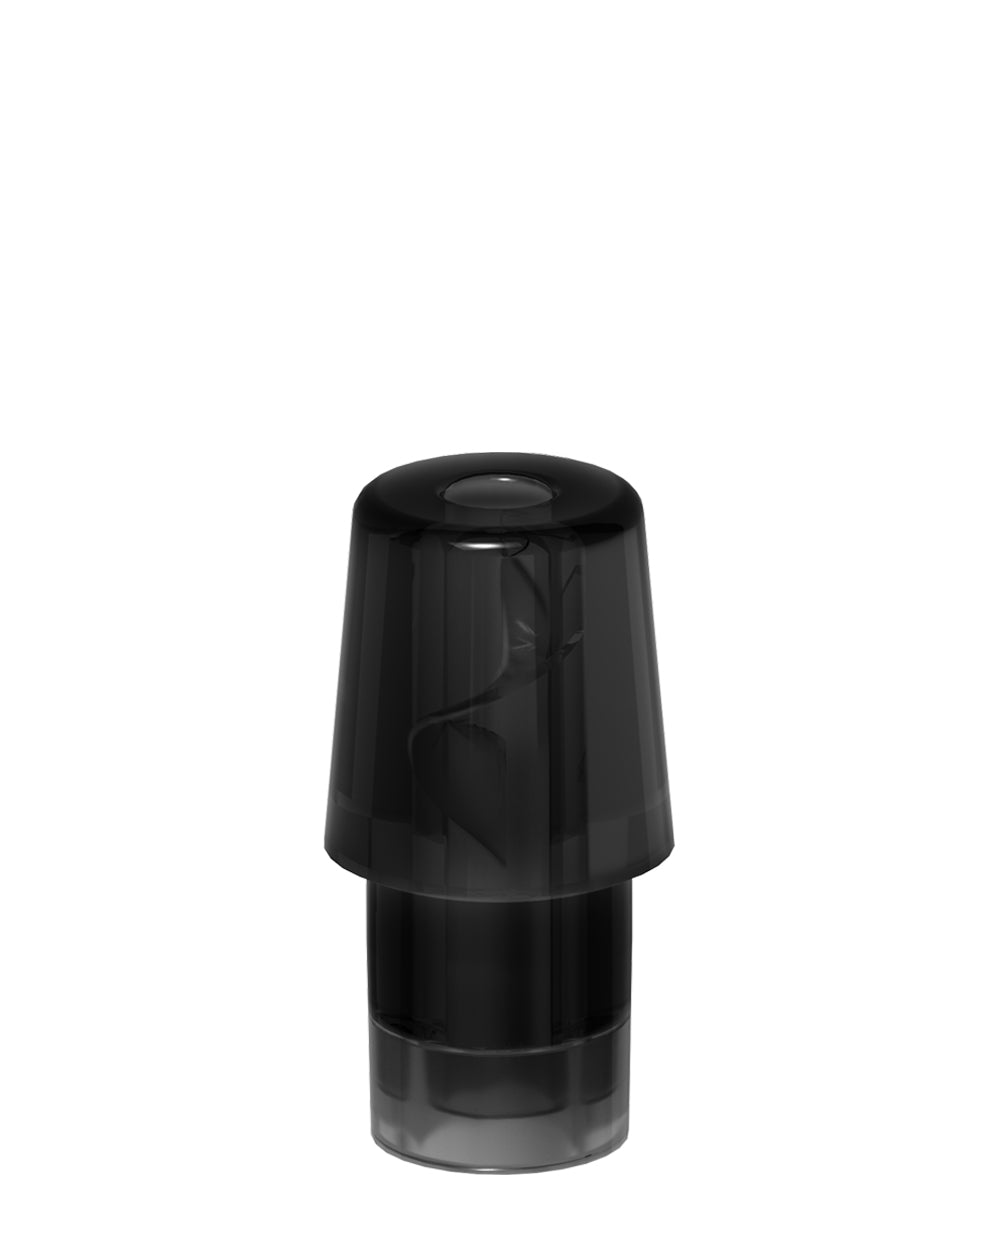 AVD | Stem Black Hemp Plastic Blend Rechargeable Disposable Vape Pen w/ Black Vortex Mouthpiece | 1mL - 220 mAh  - 3